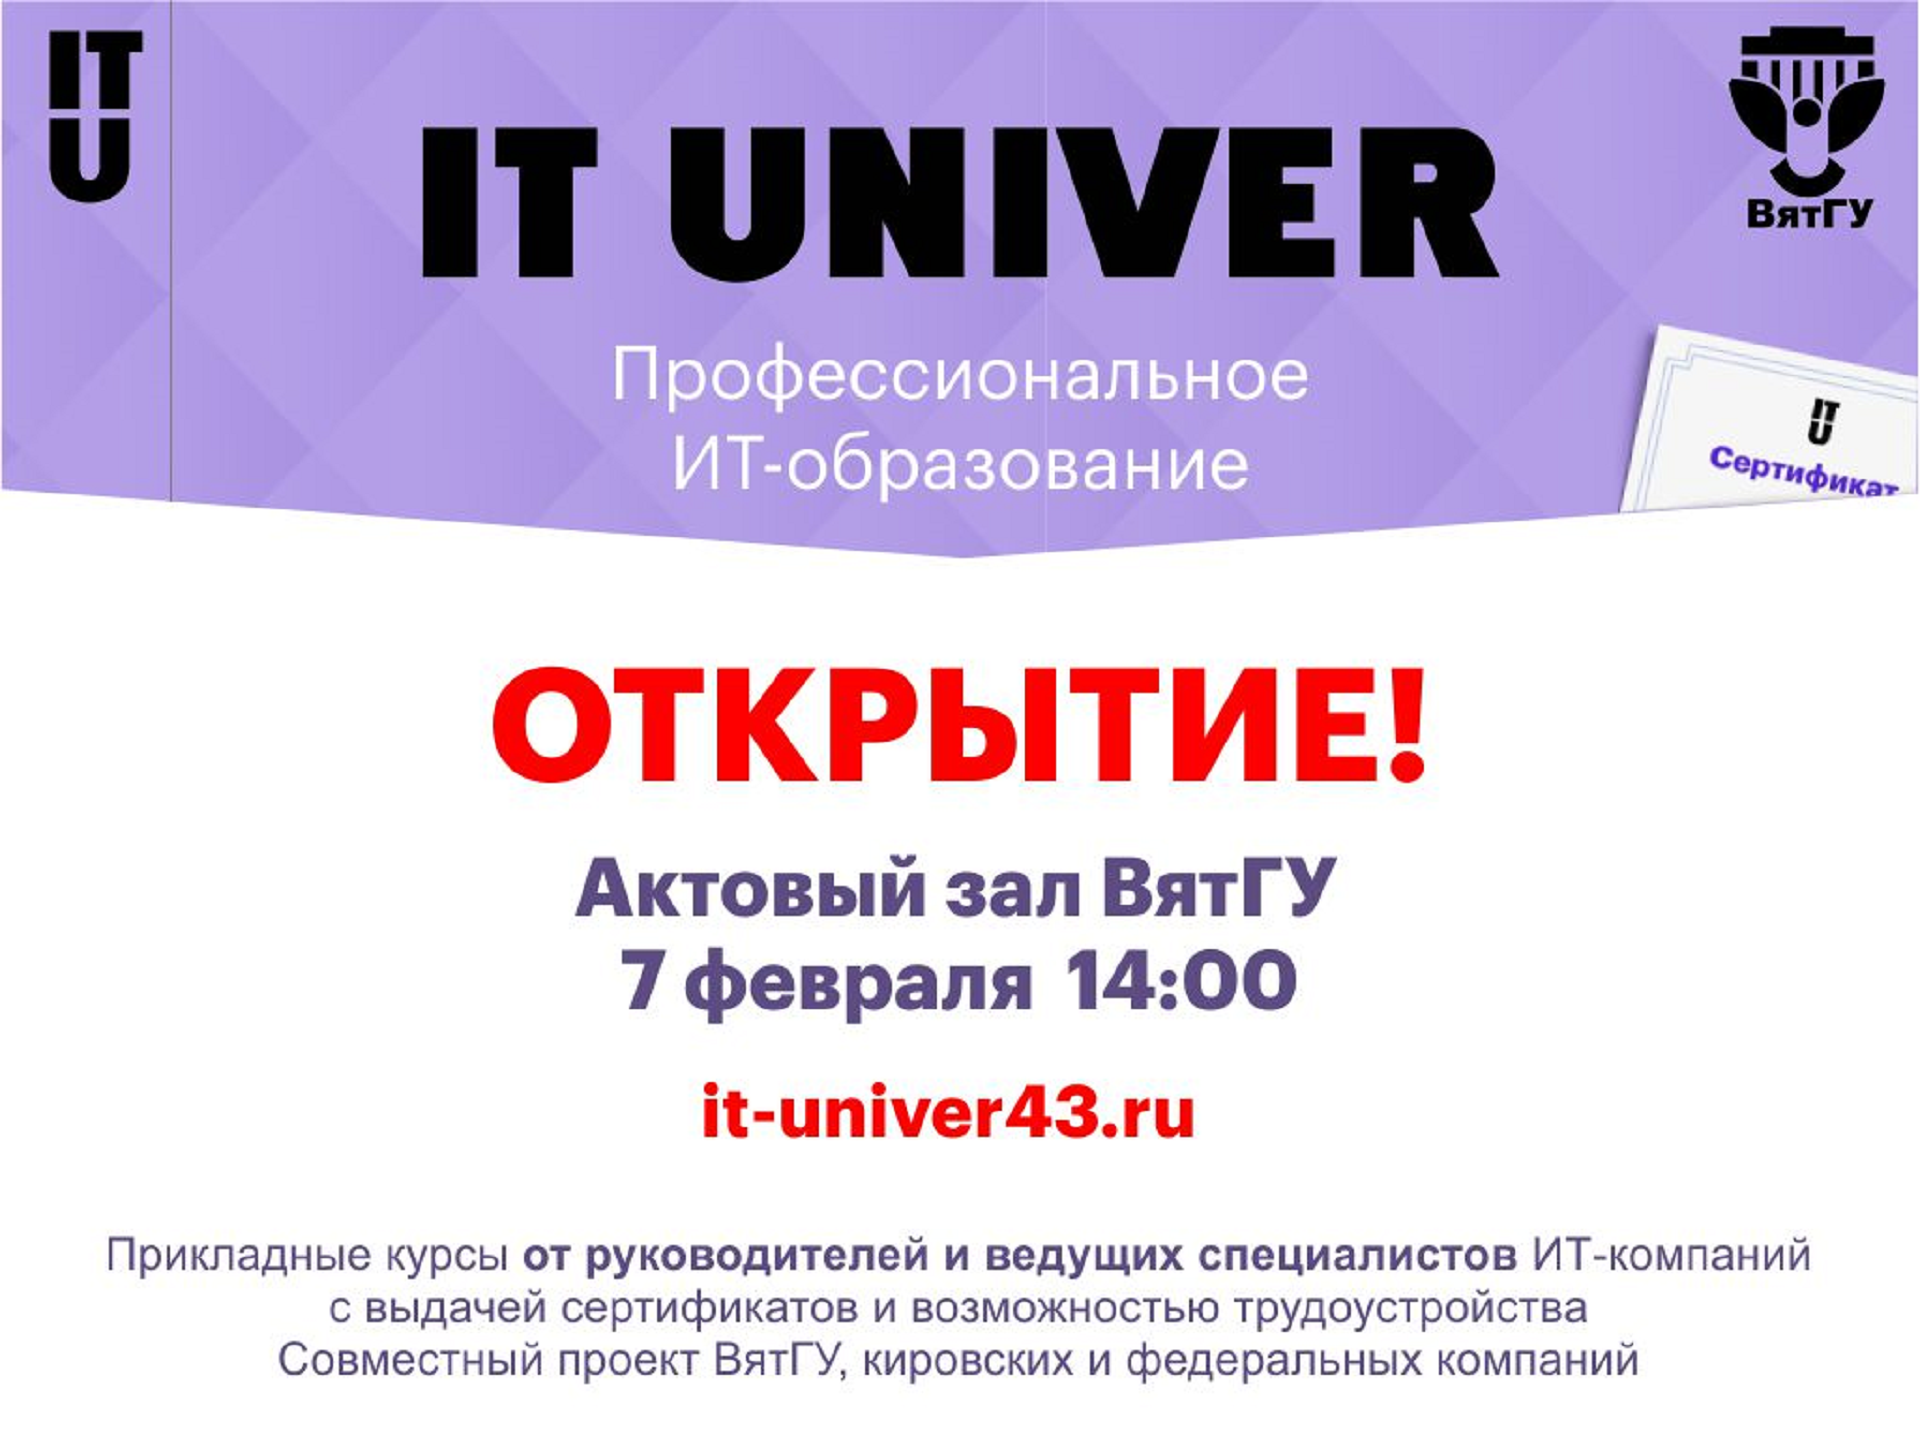 7 февраля в Вятском государственном университете пройдет открытие IT-Univer